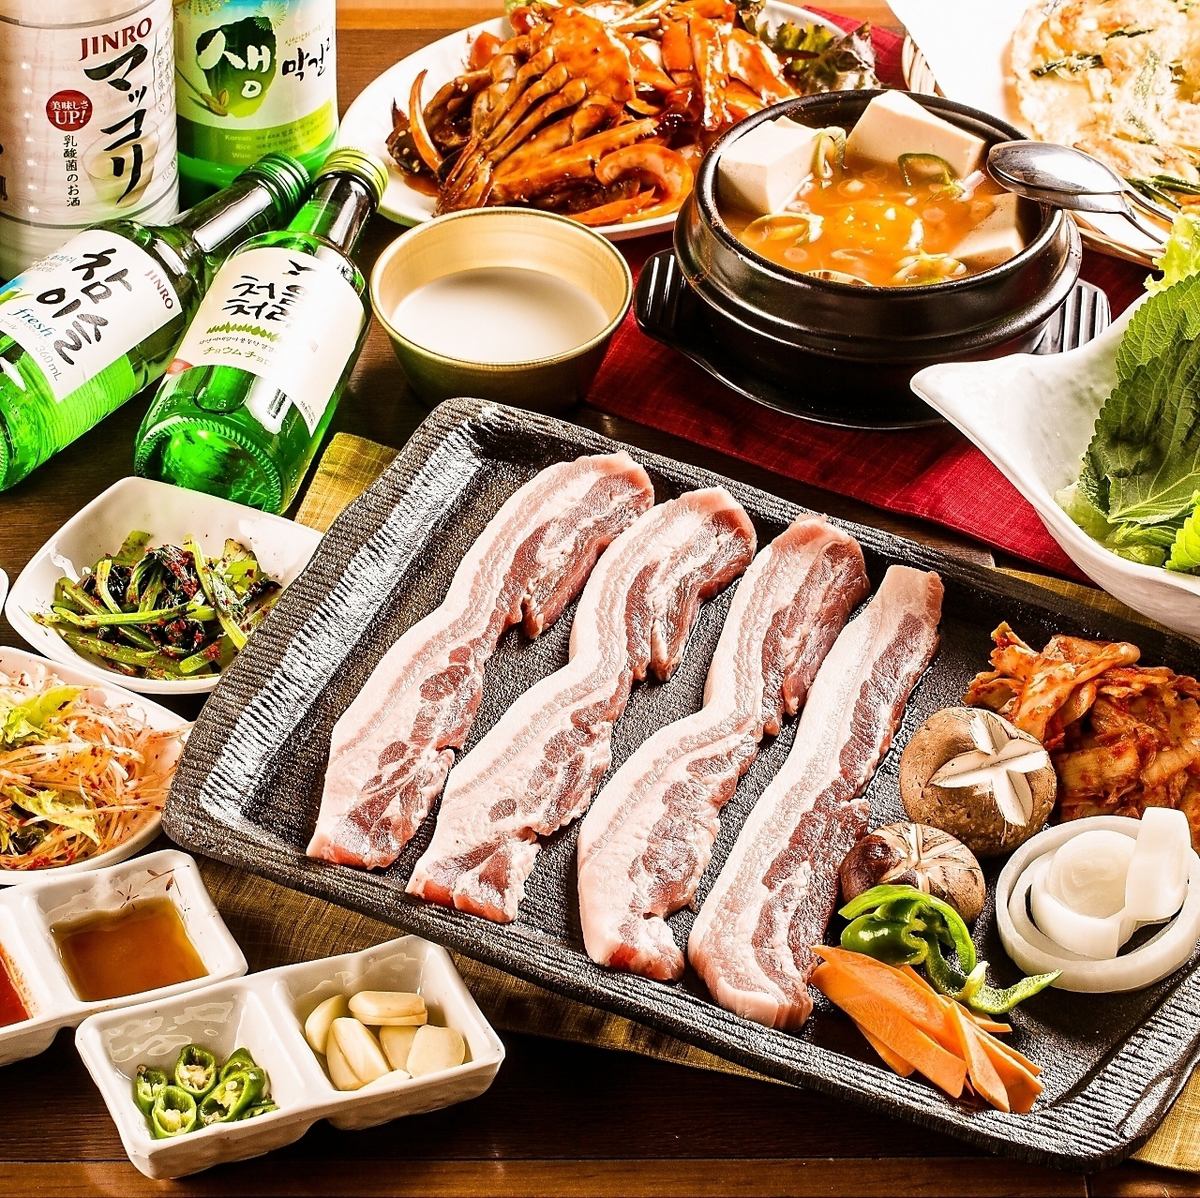 韩国人气餐厅“Kin-chan超值套餐”【7道菜/3,800日元】★